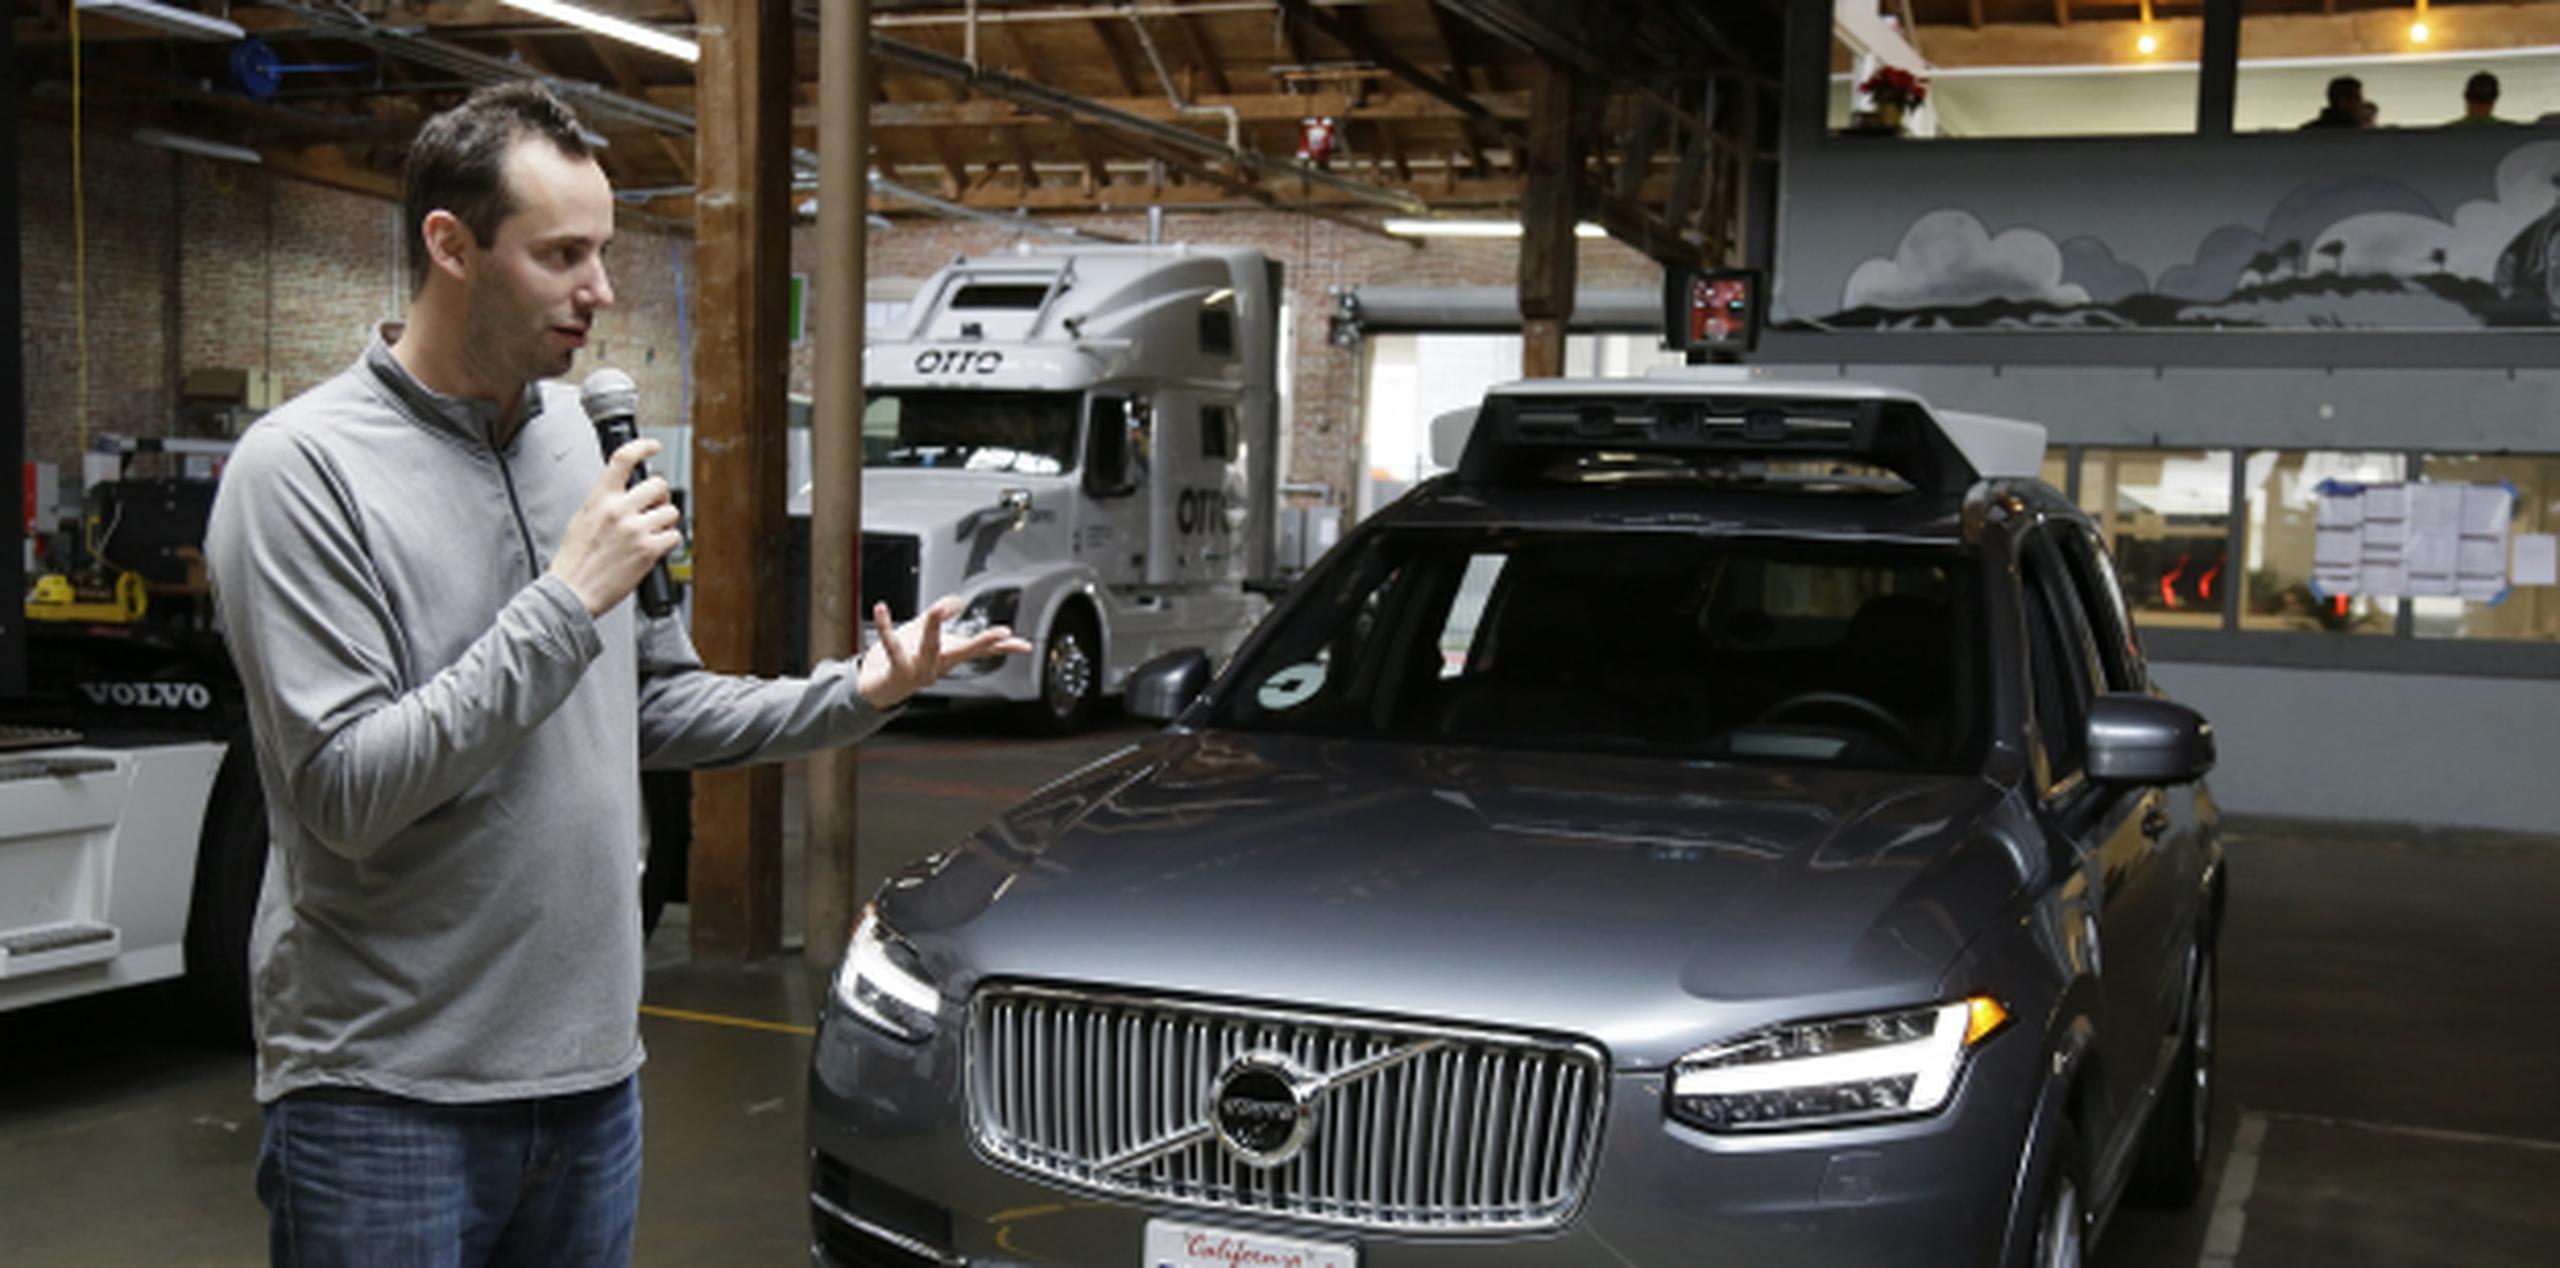 Hasta el mes pasado, Levandowski había estado al frente de la división de vehículos autónomos de Uber. (AP / Archivo)